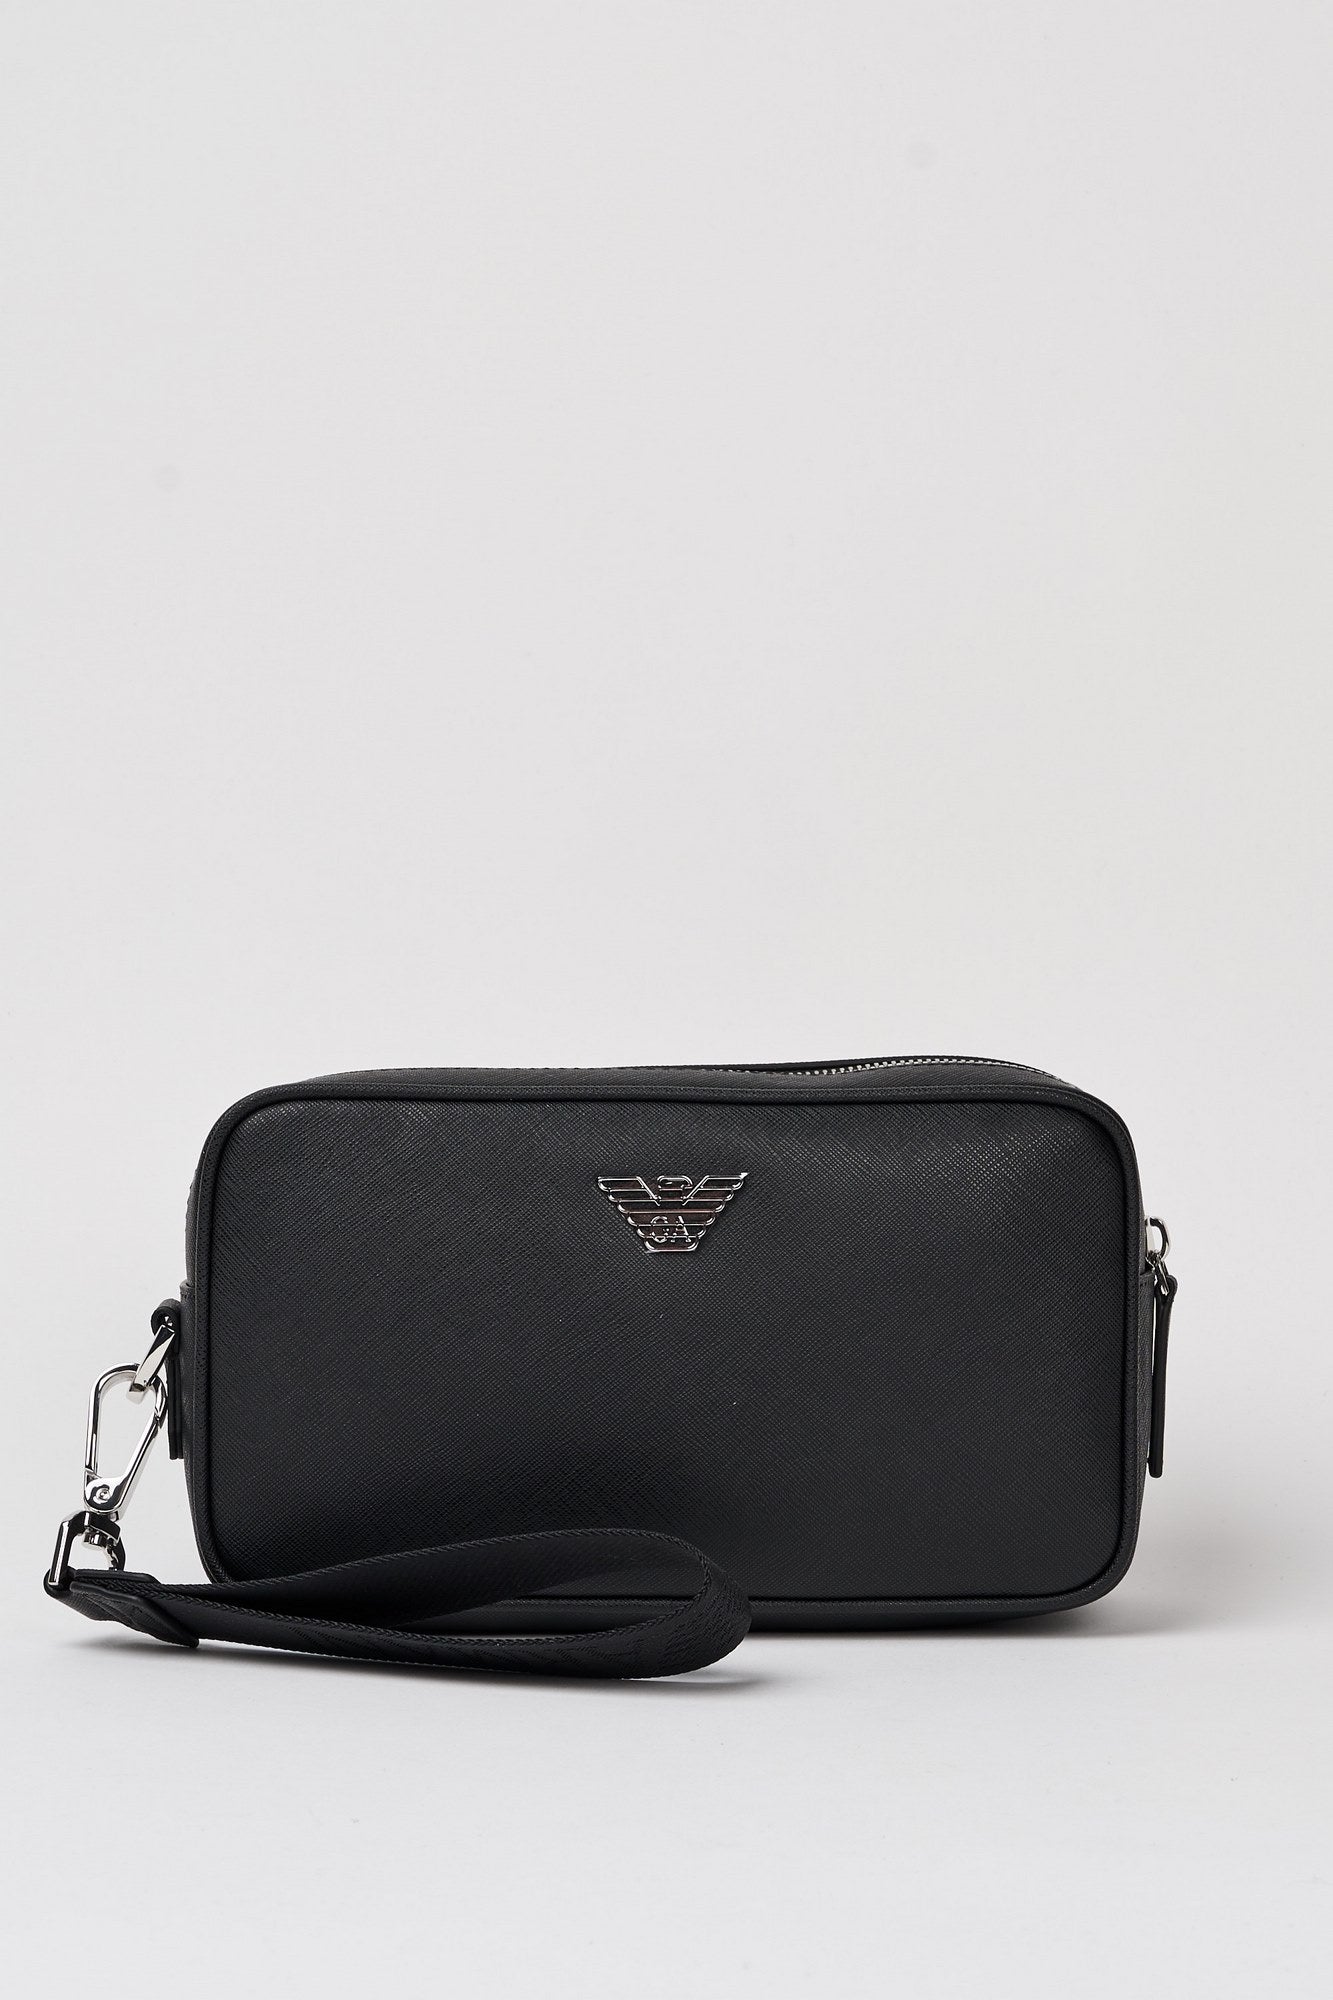 Emporio Armani Regenerated Leather Saffiano Beauty Case Black-1